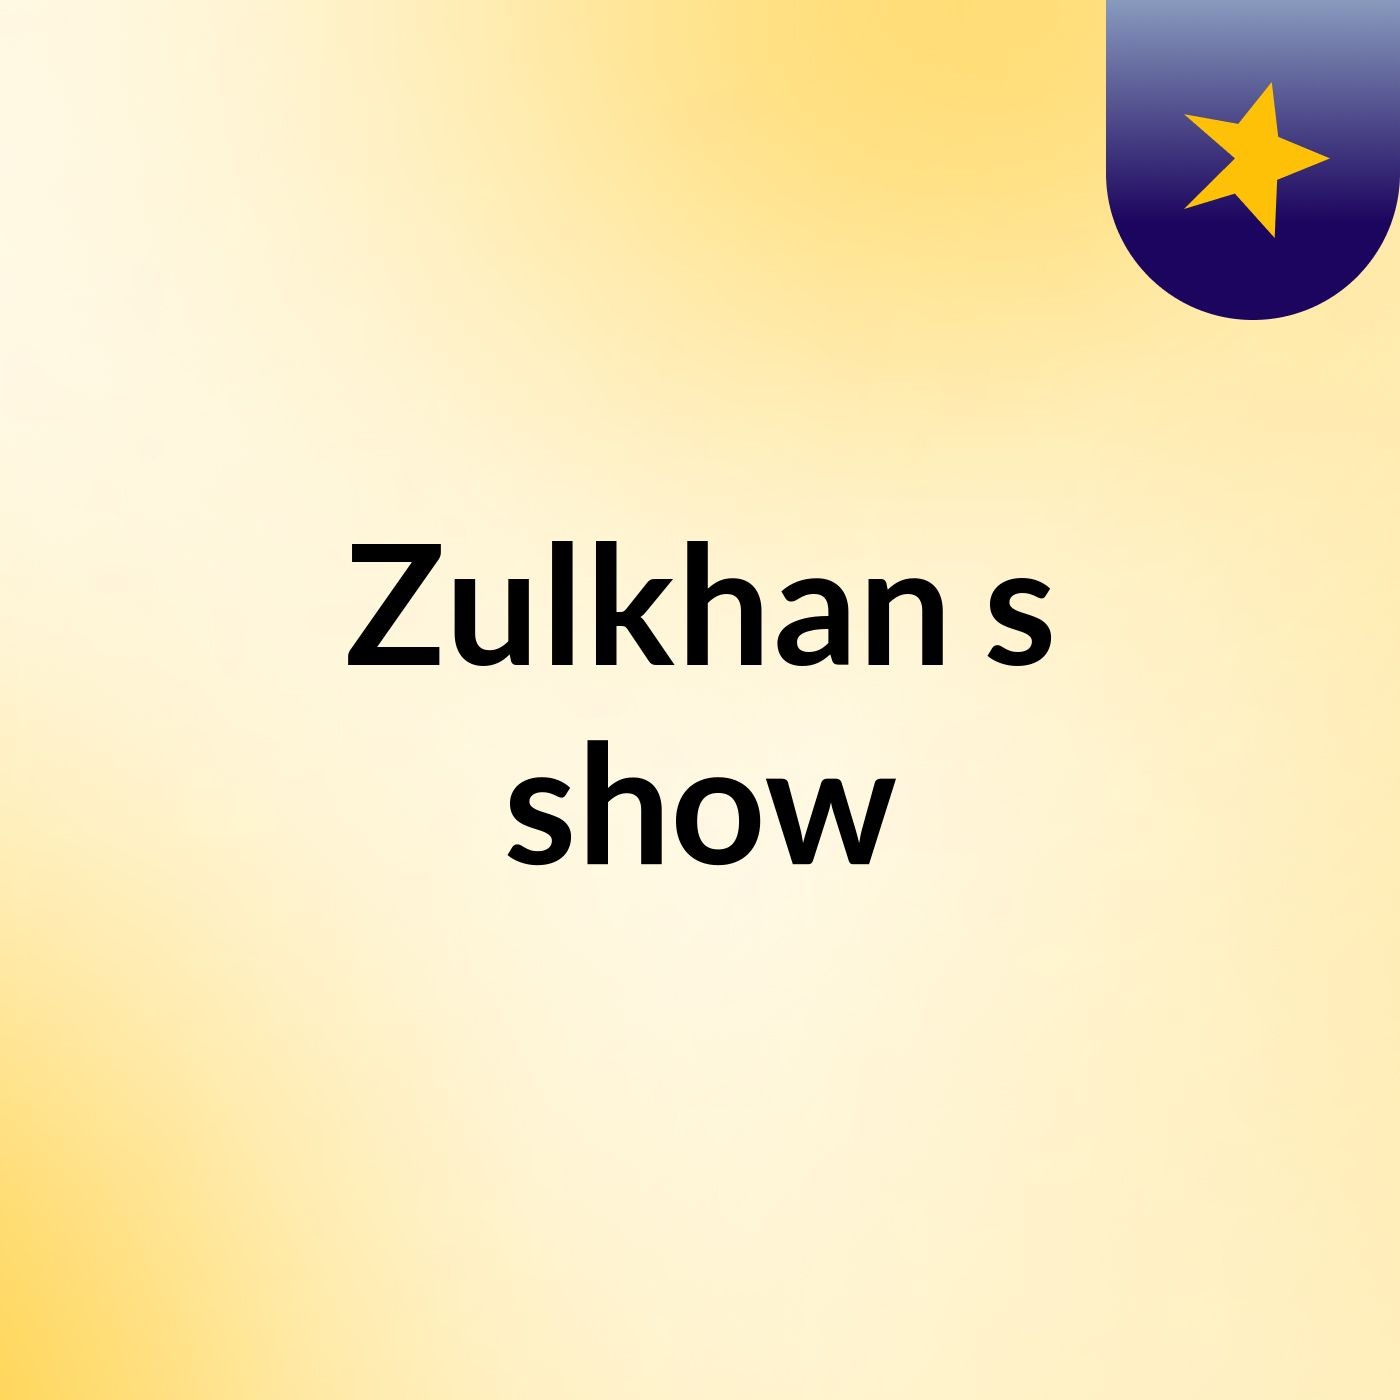 Zulkhan's show